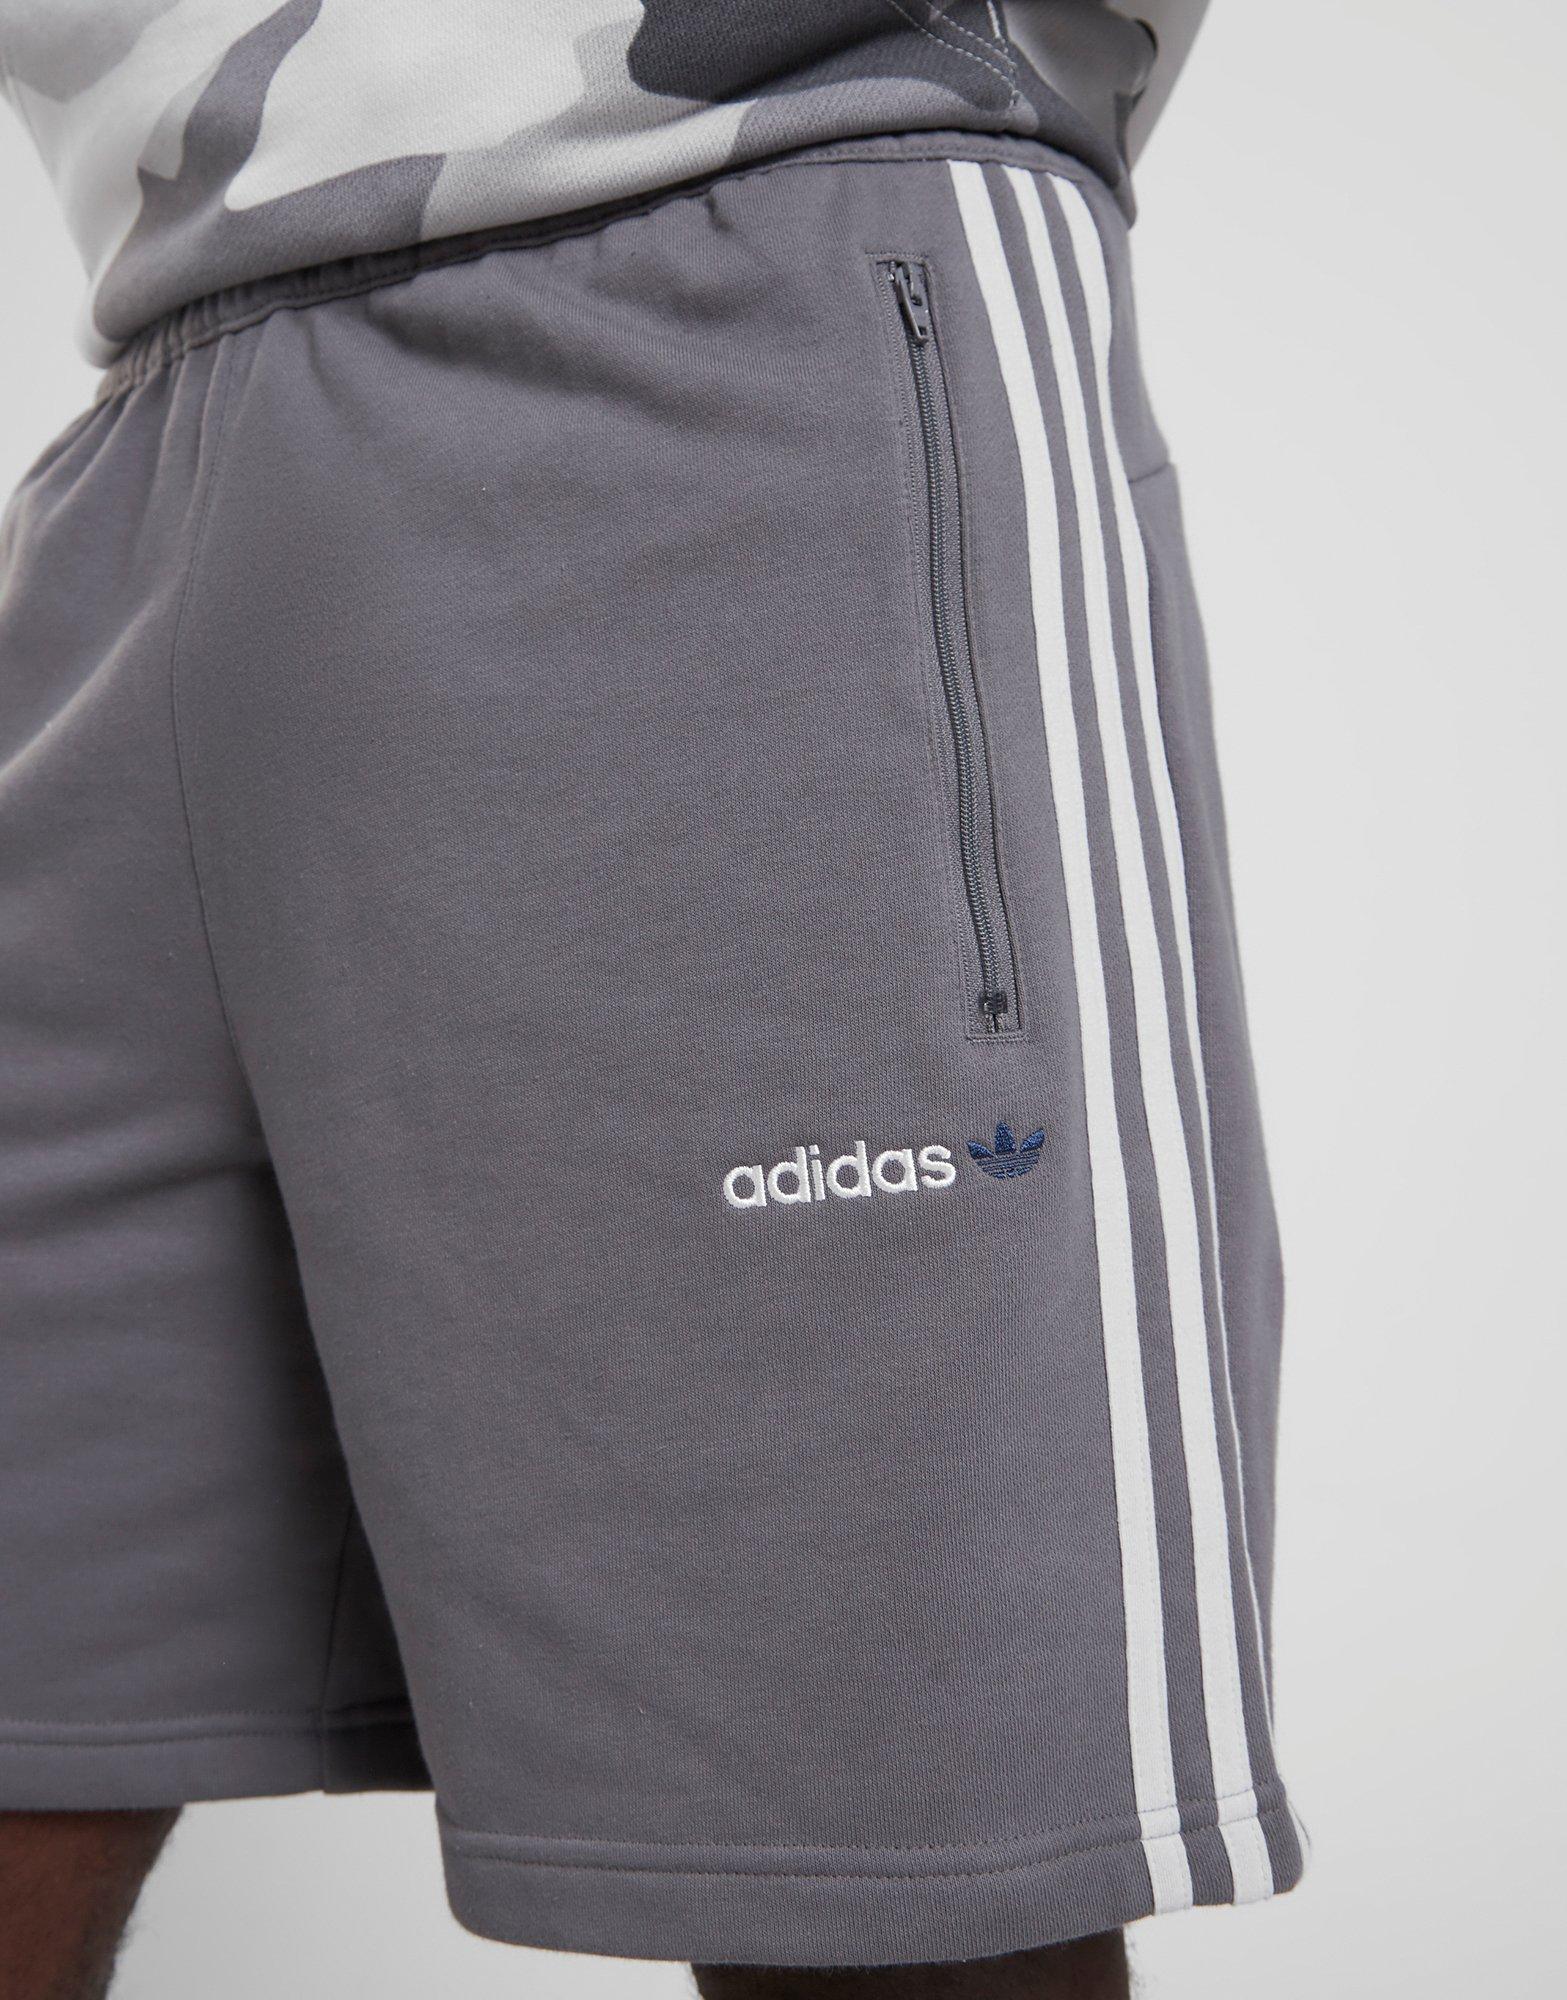 mens adidas shorts with zip pockets